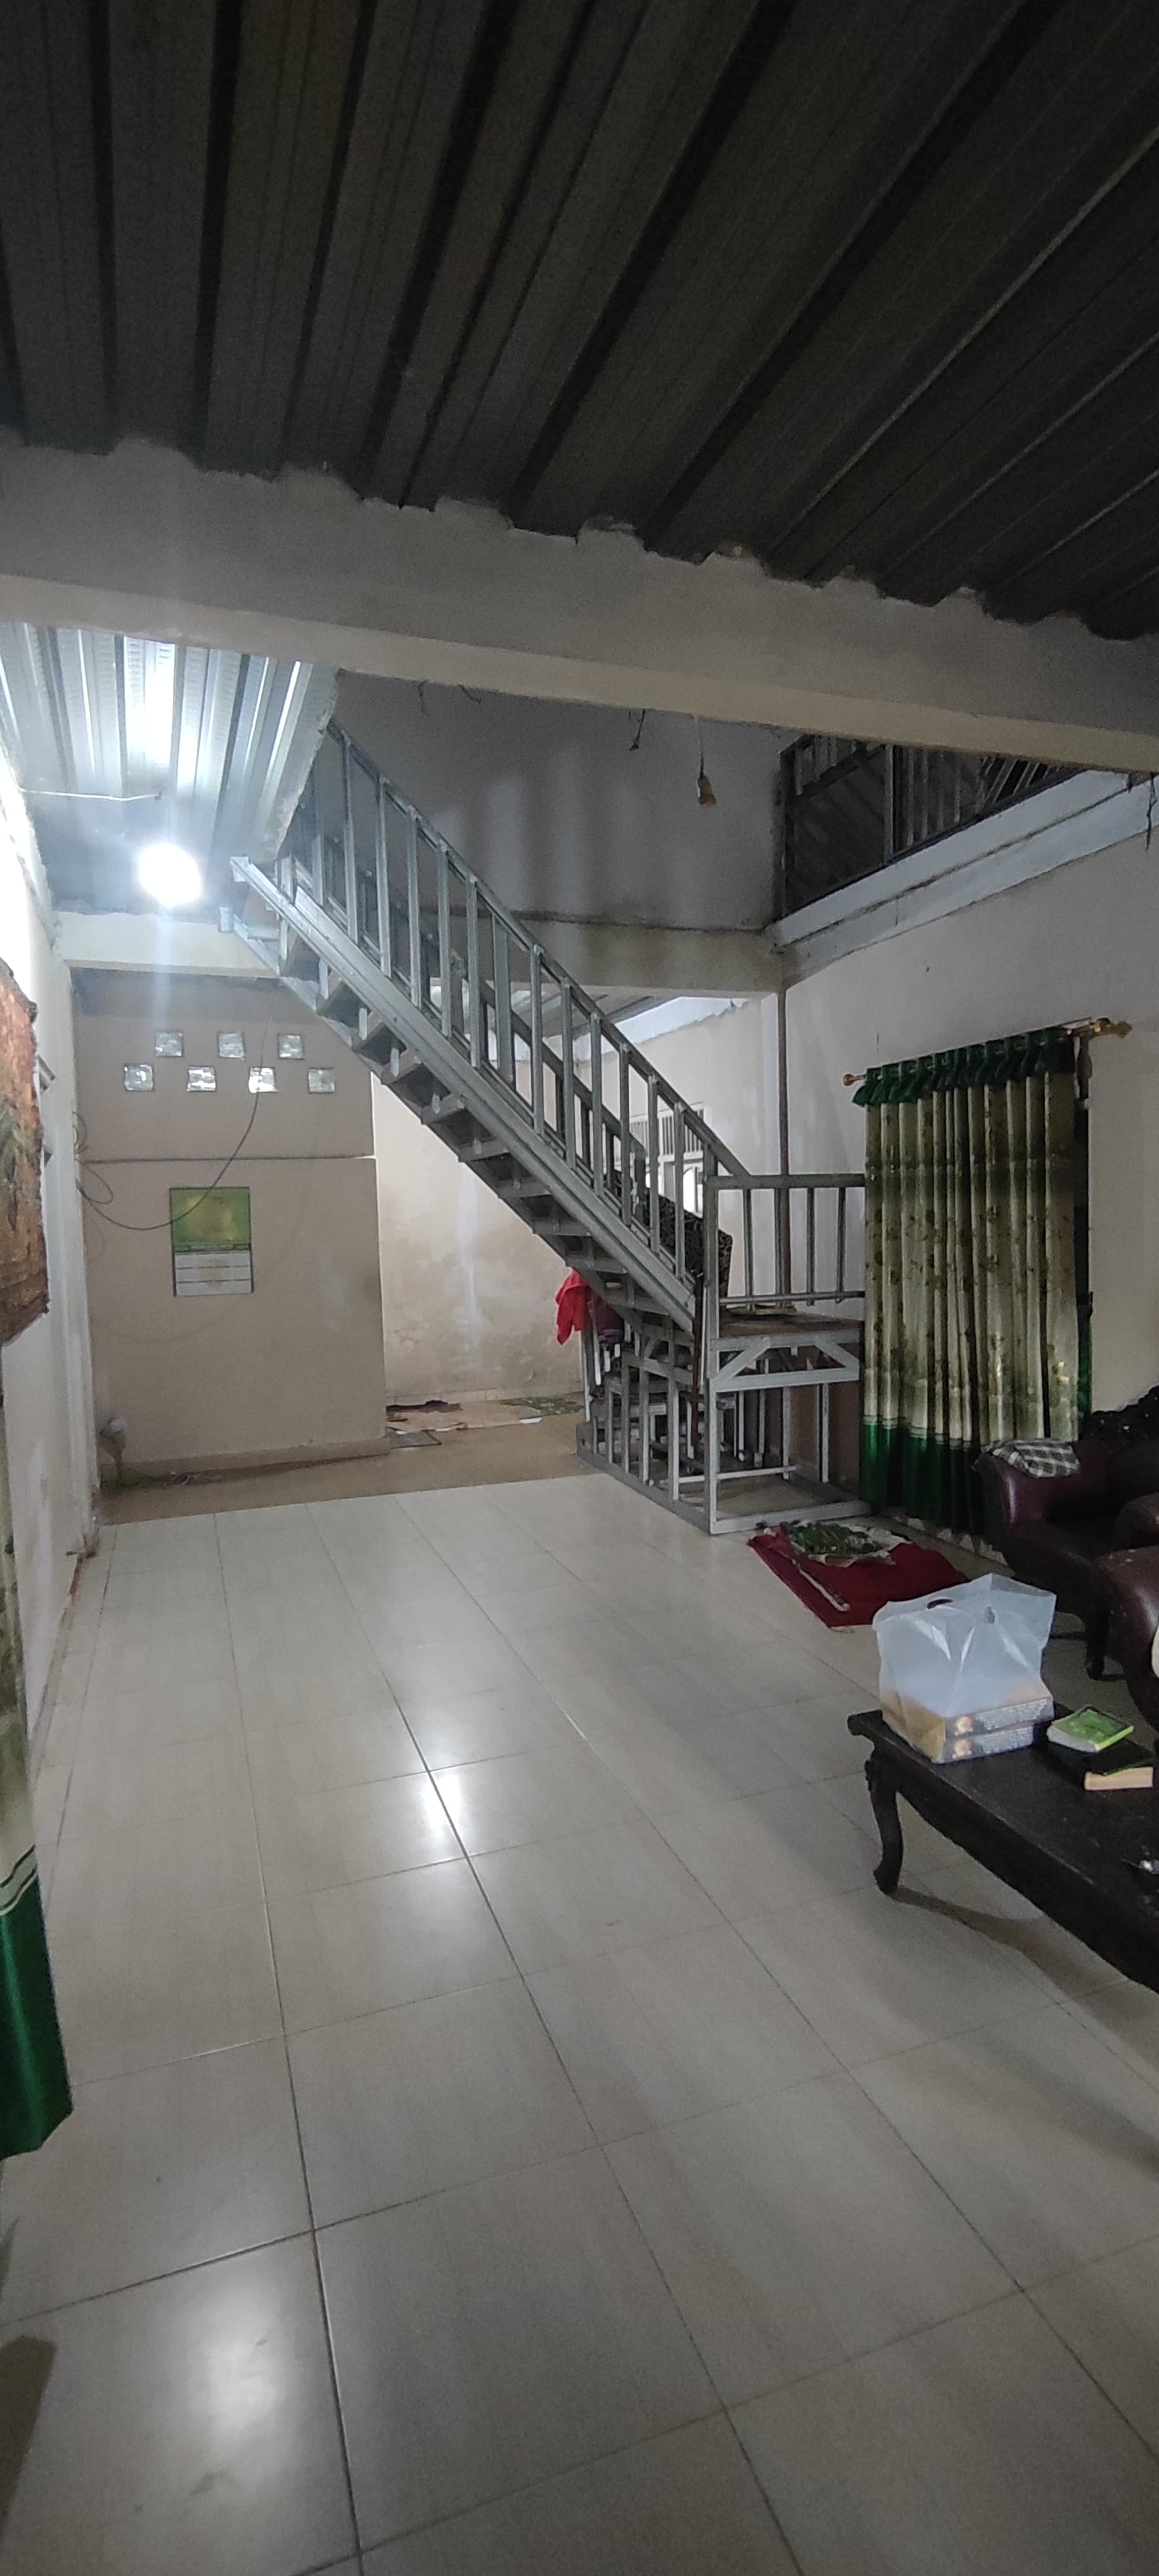 Rumah Pondok Terong - Citayam - Depok 2 Lantai Siap Huni Asri